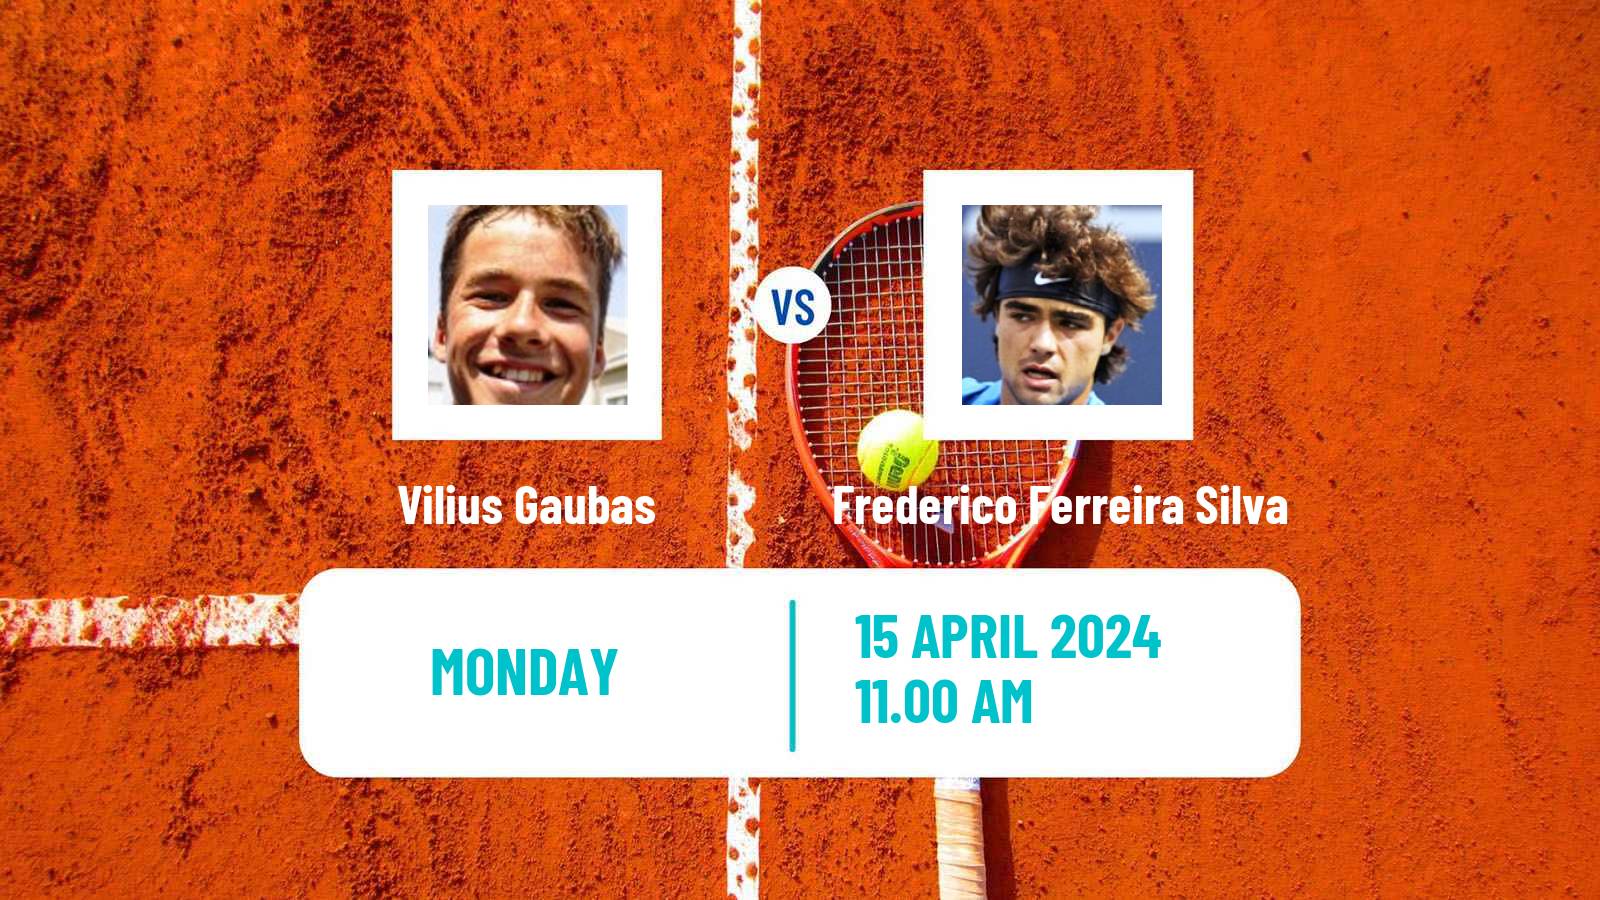 Tennis Oeiras 3 Challenger Men Vilius Gaubas - Frederico Ferreira Silva